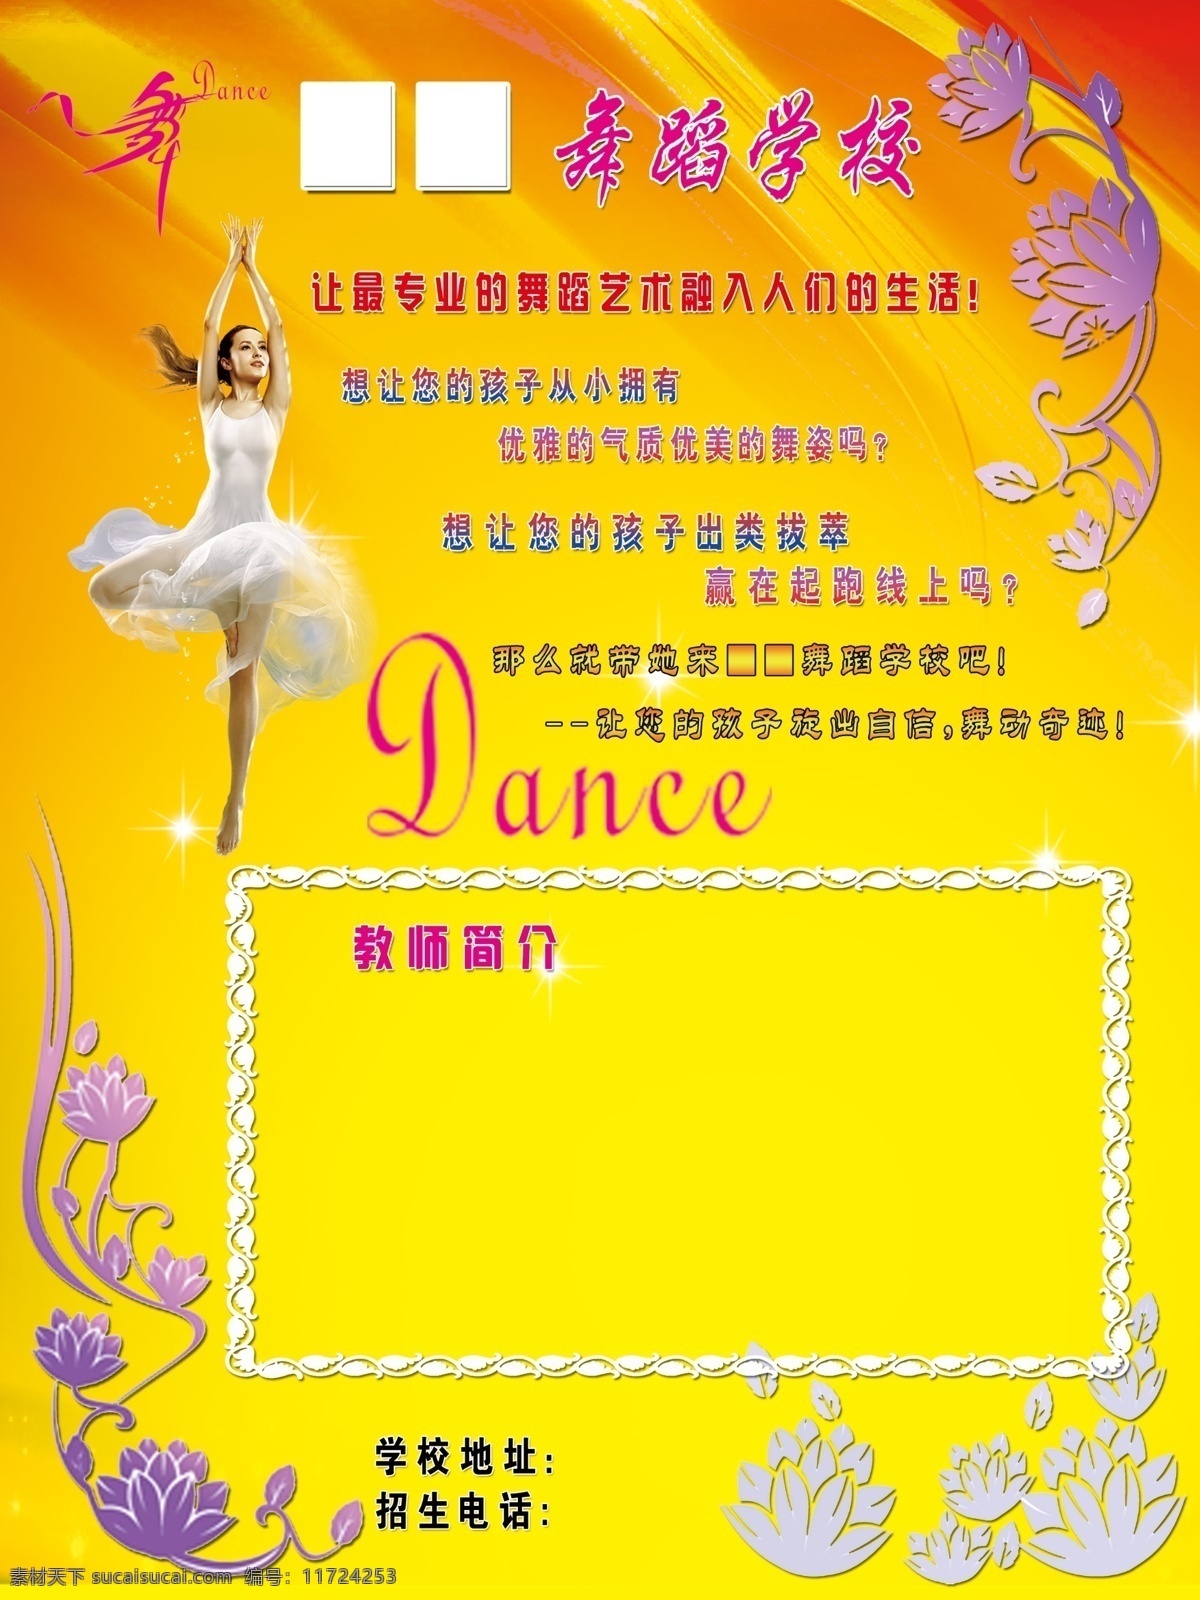 舞蹈 学校 广告设计模板 教师简介 拉丁舞 舞蹈学校 源文件 美女跳舞 舞蹈简介 舞蹈宣传语 psd源文件